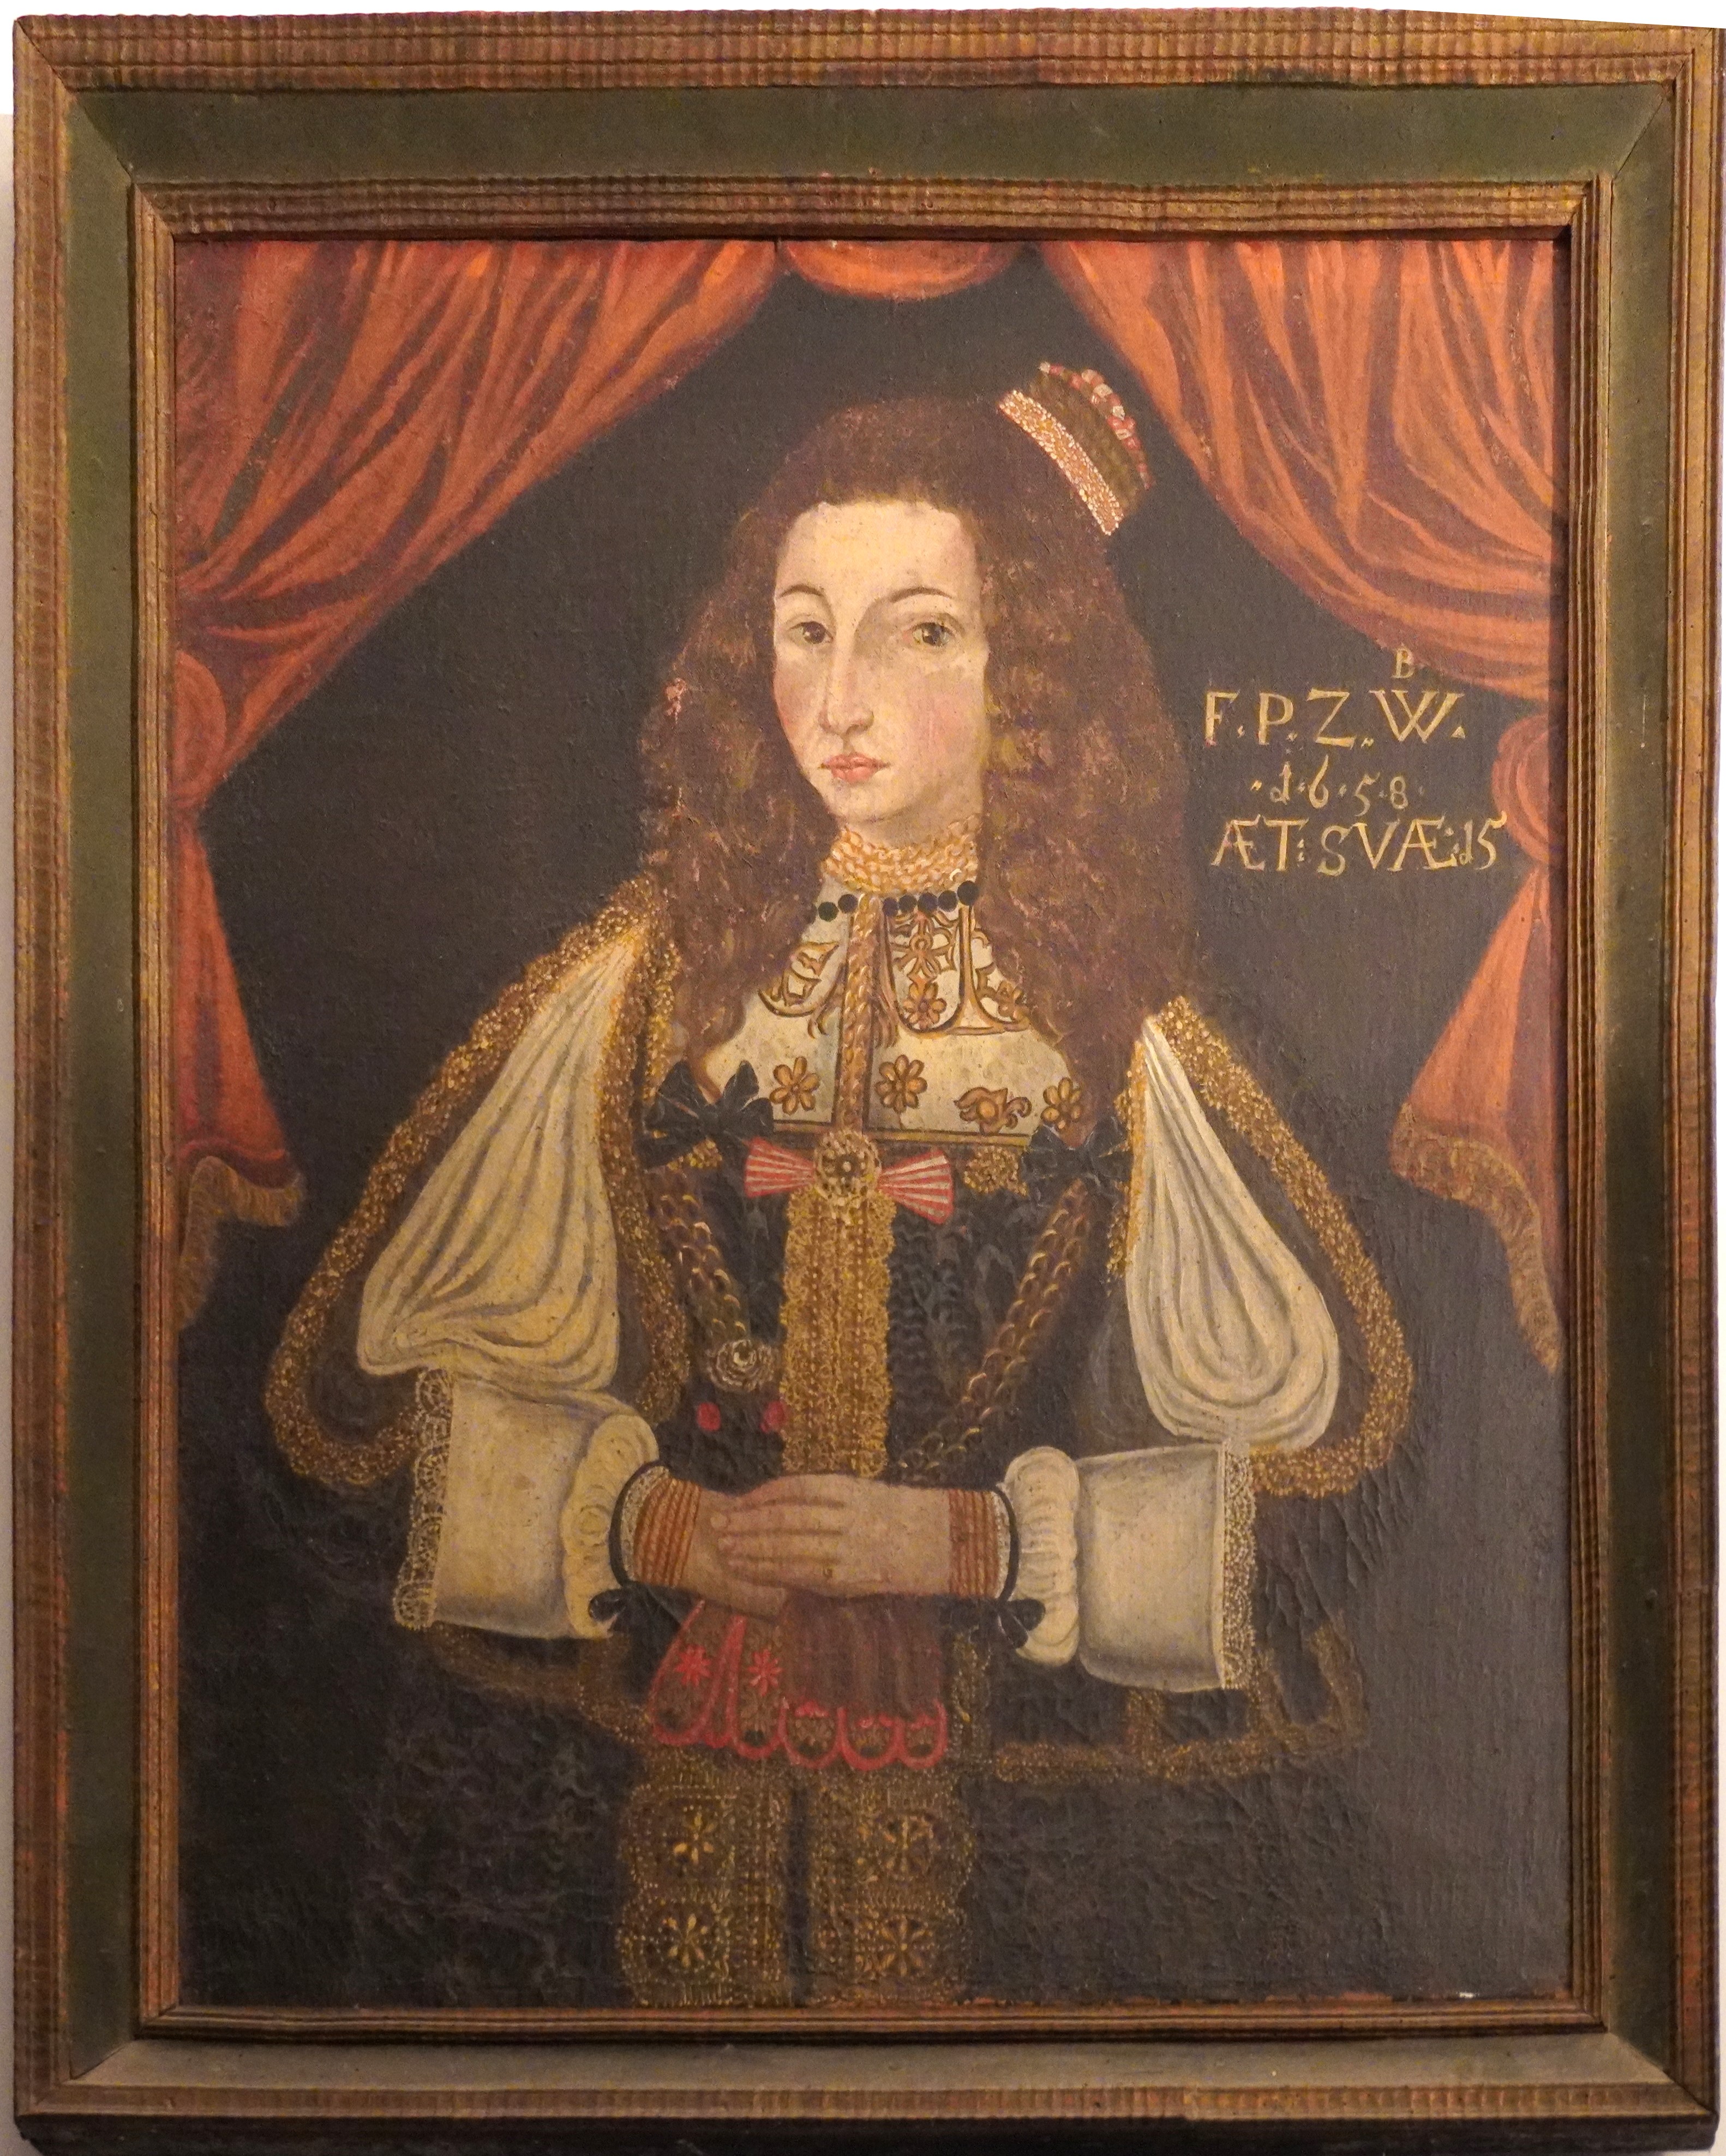 Porträt einer vornehmen Dame des 17. Jahrhunderts. Sie hat auffällige offene rotbraune Haare. Das Porträt ist qualitativ nicht sehr hochstehend. In der Ecke steht FPZW 1648 aetatis suae 15